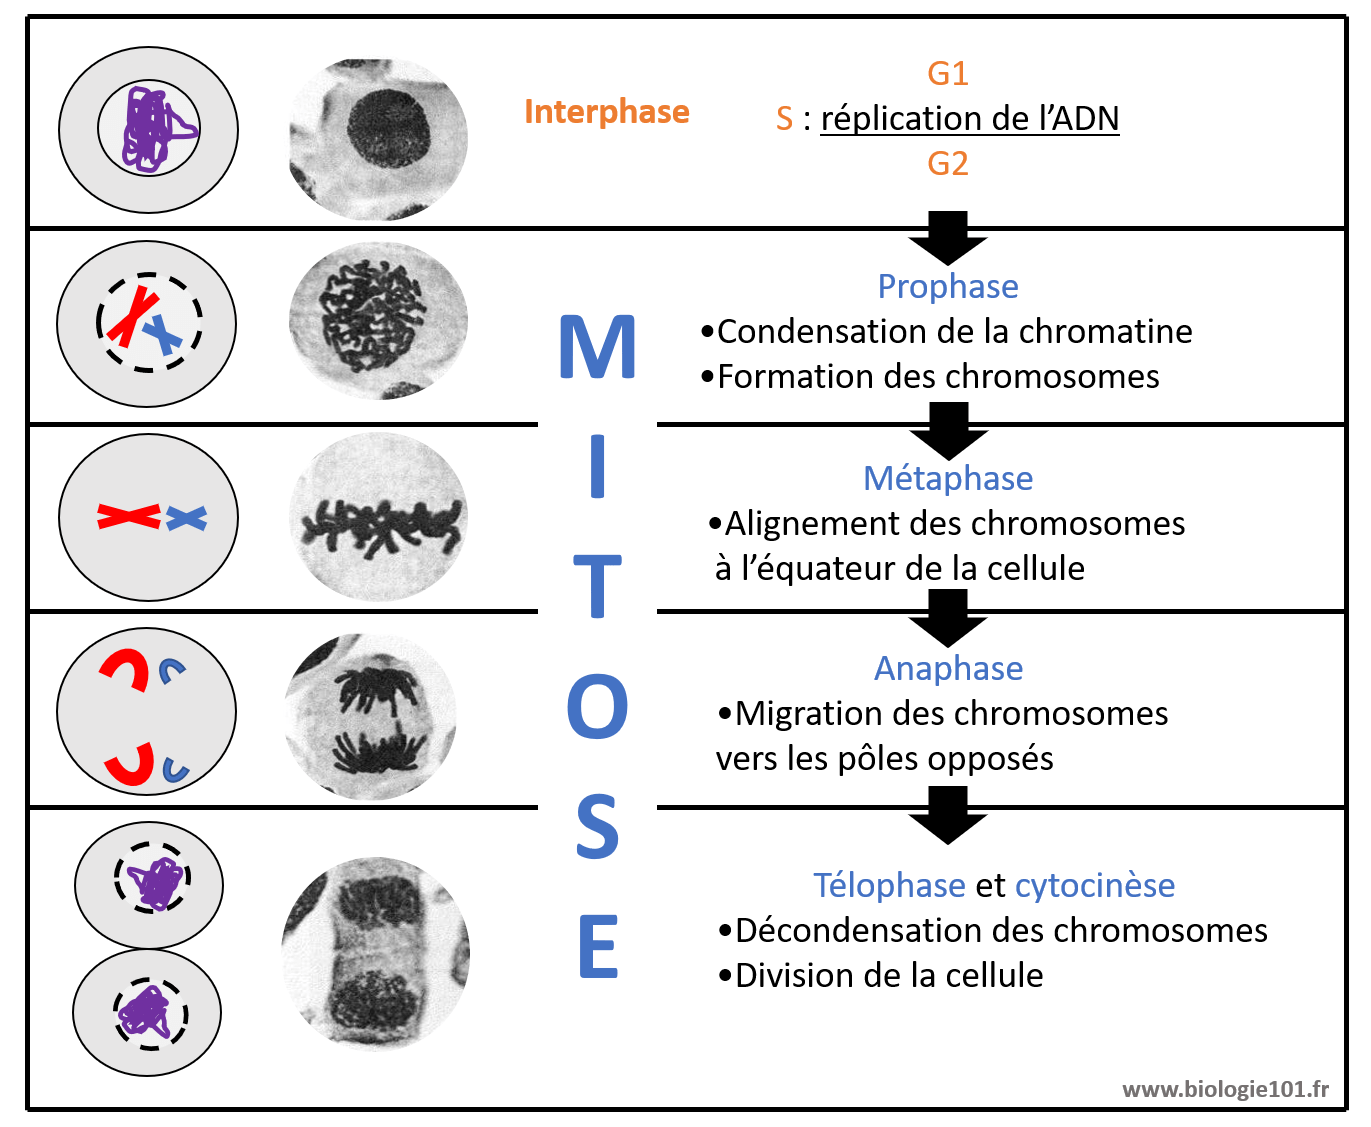 Les quatre étapes de la mitose sont : prophase, métaphase, anaphase, télophase